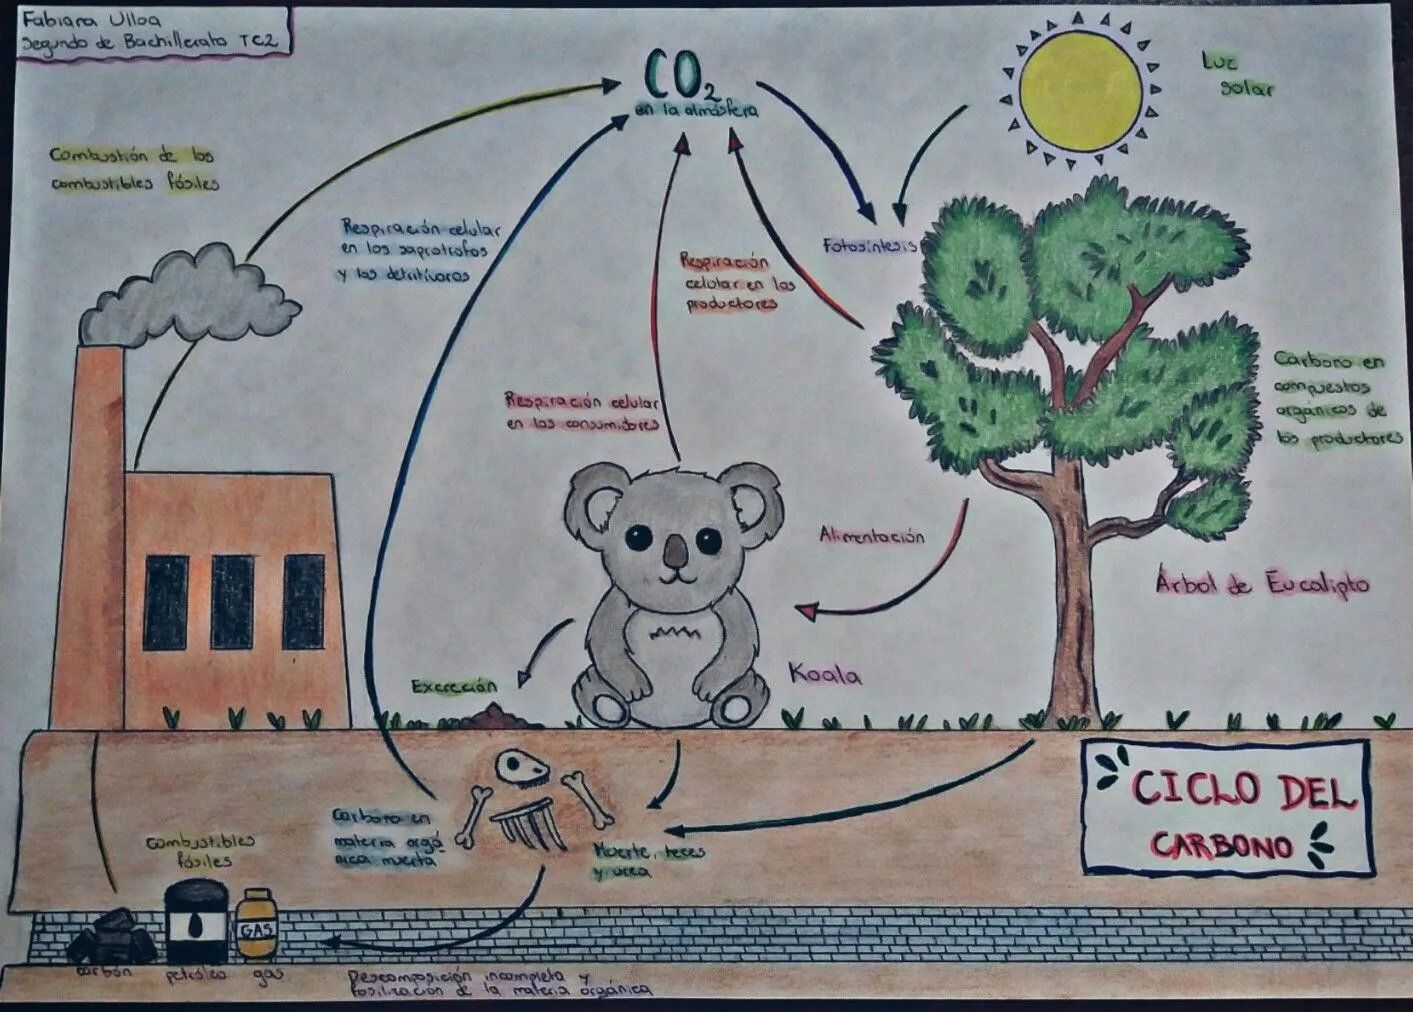 Ciclo del Carbono | Ciclo del carbono, Tarjeta en ingles, Ciclo hidrologico